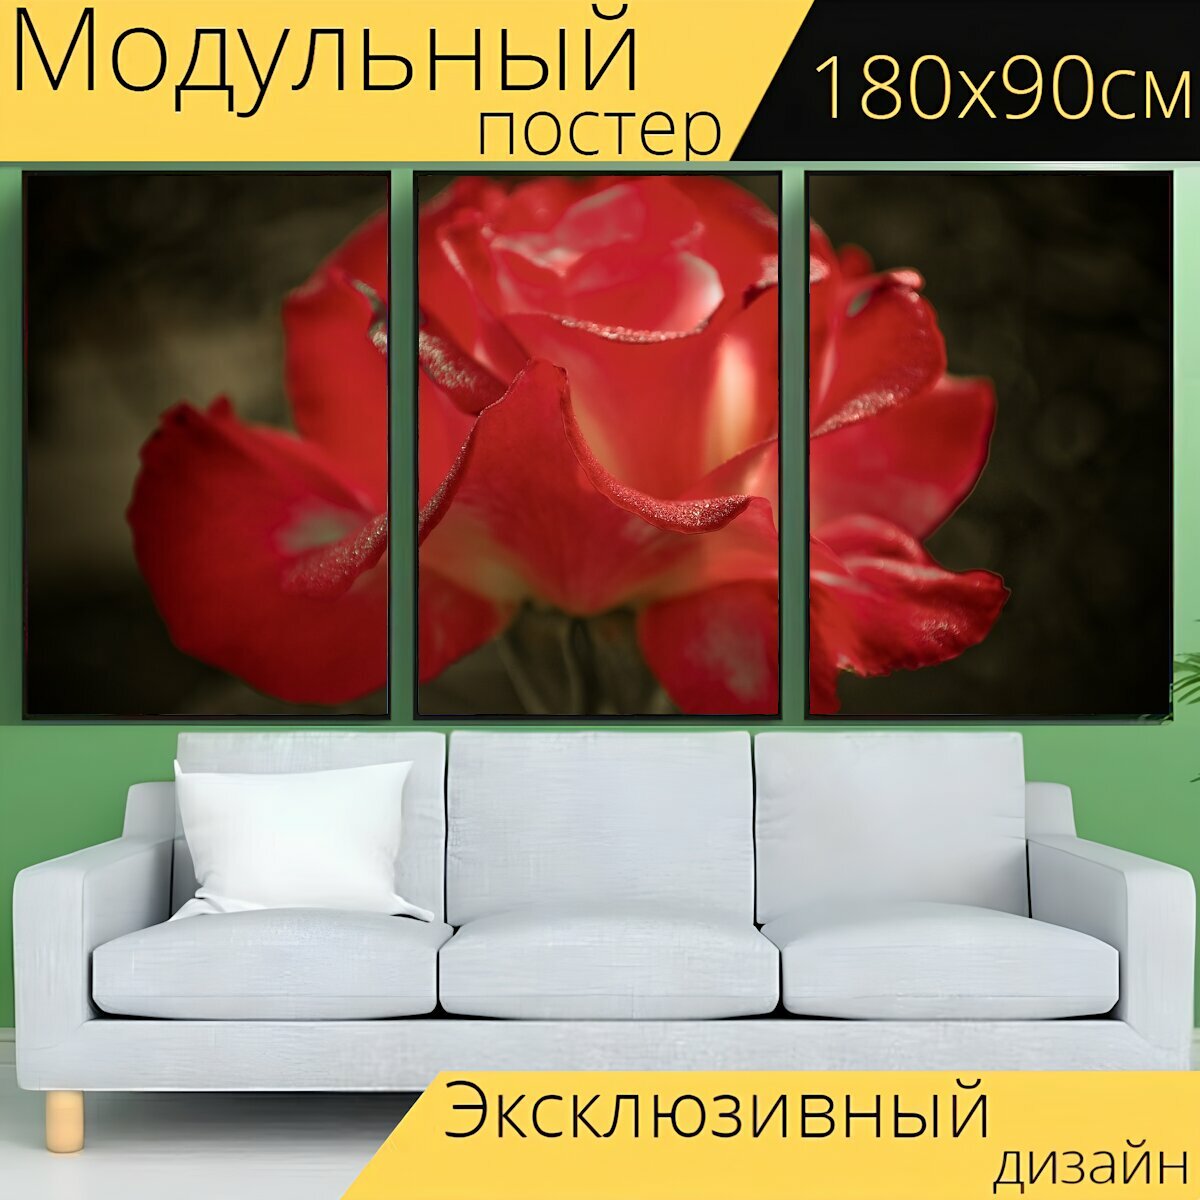 Модульный постер "Роза, красная роза, красный цветок" 180 x 90 см. для интерьера